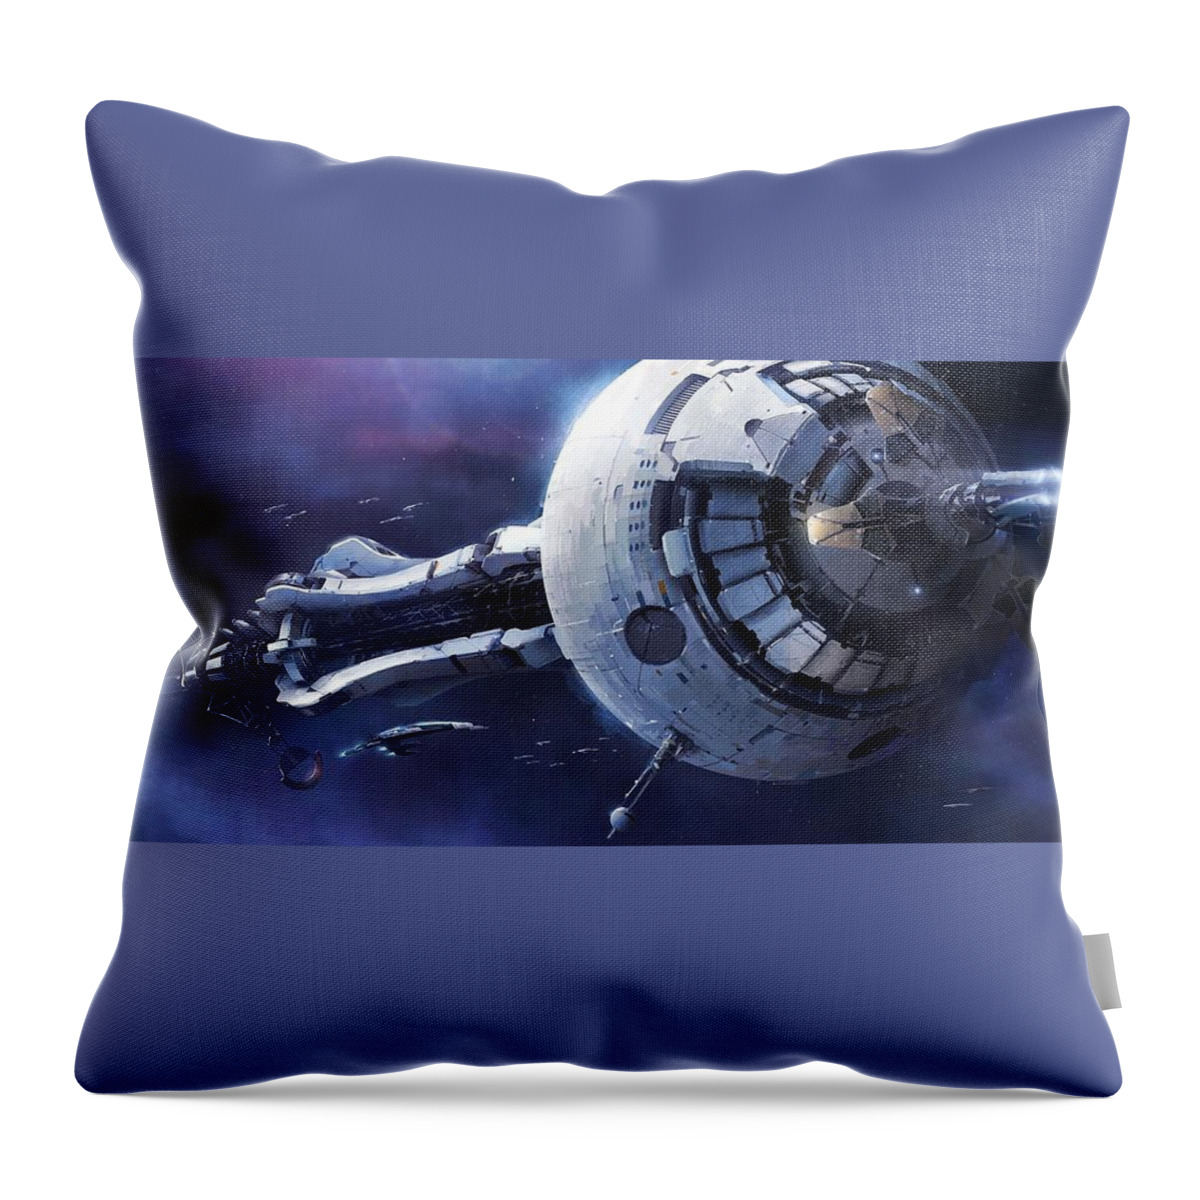 Mass Effect Throw Pillow featuring the digital art Mass Effect #3 by Maye Loeser